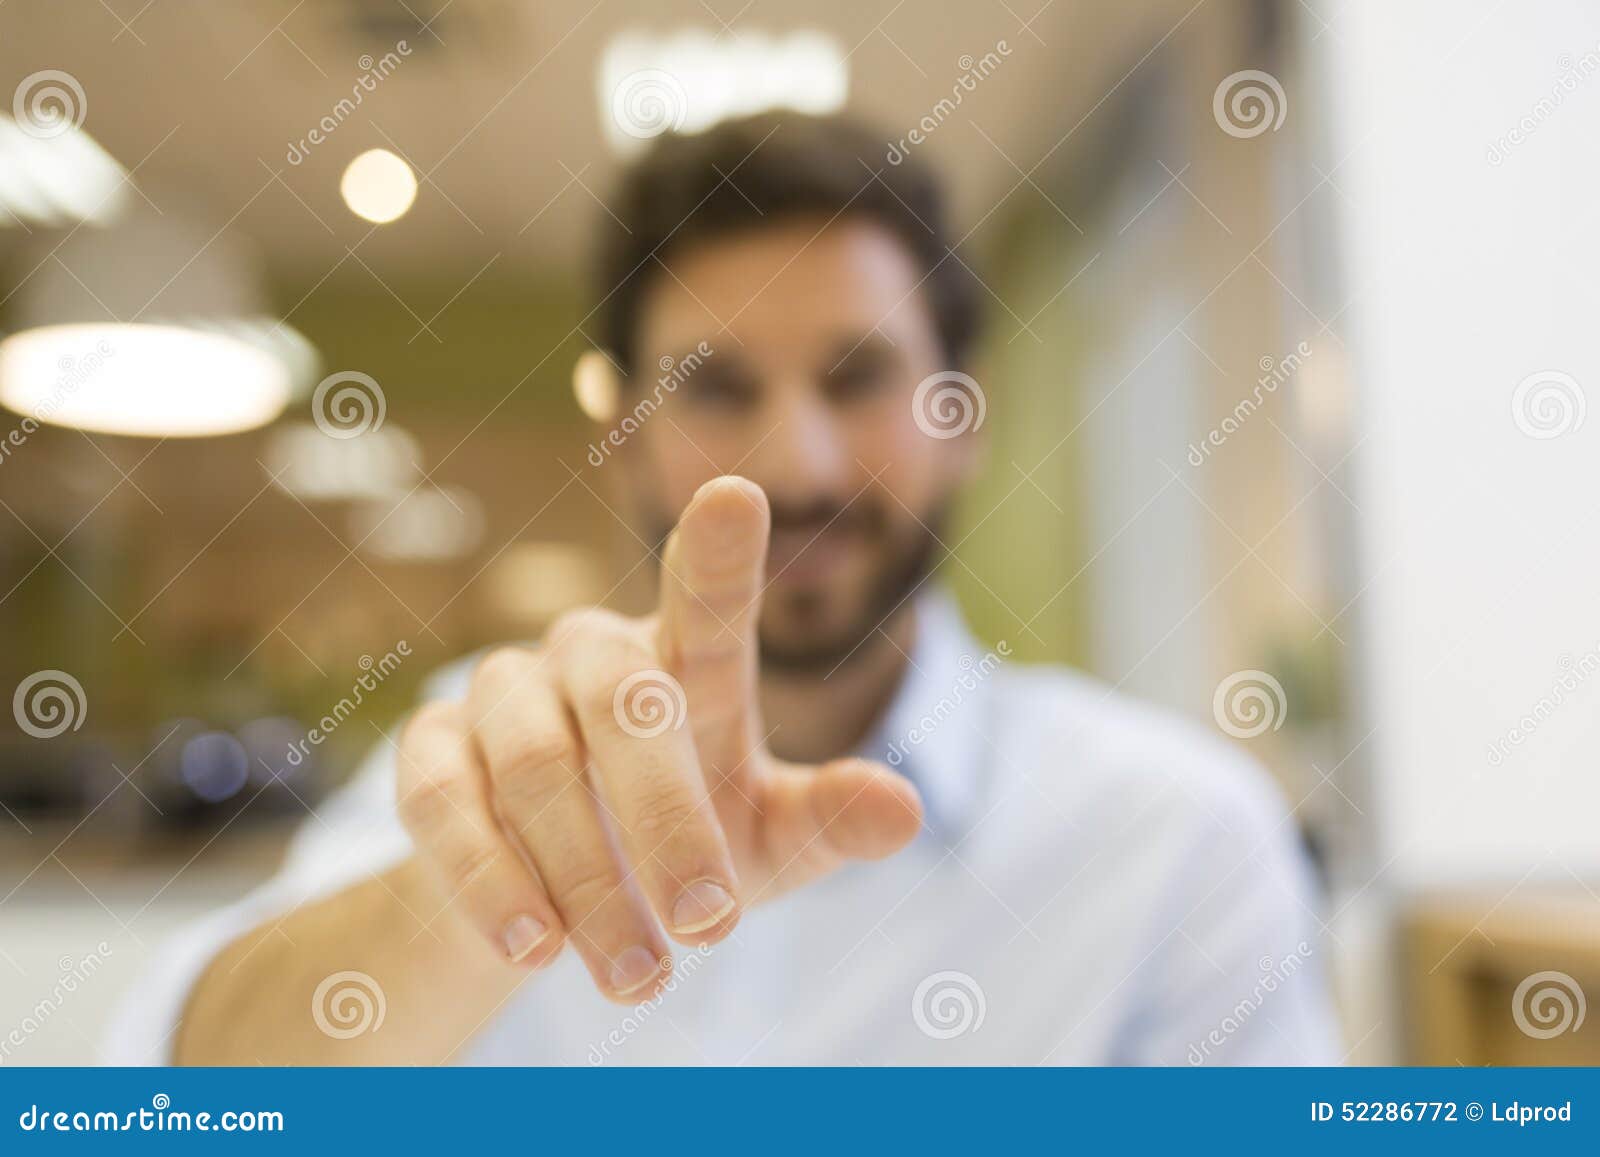 Нажатие пальцем на экран. Мужчина нажимает на экран. Человек палец. Палец указывает в экран. Человек нажимает пальцем на экран.